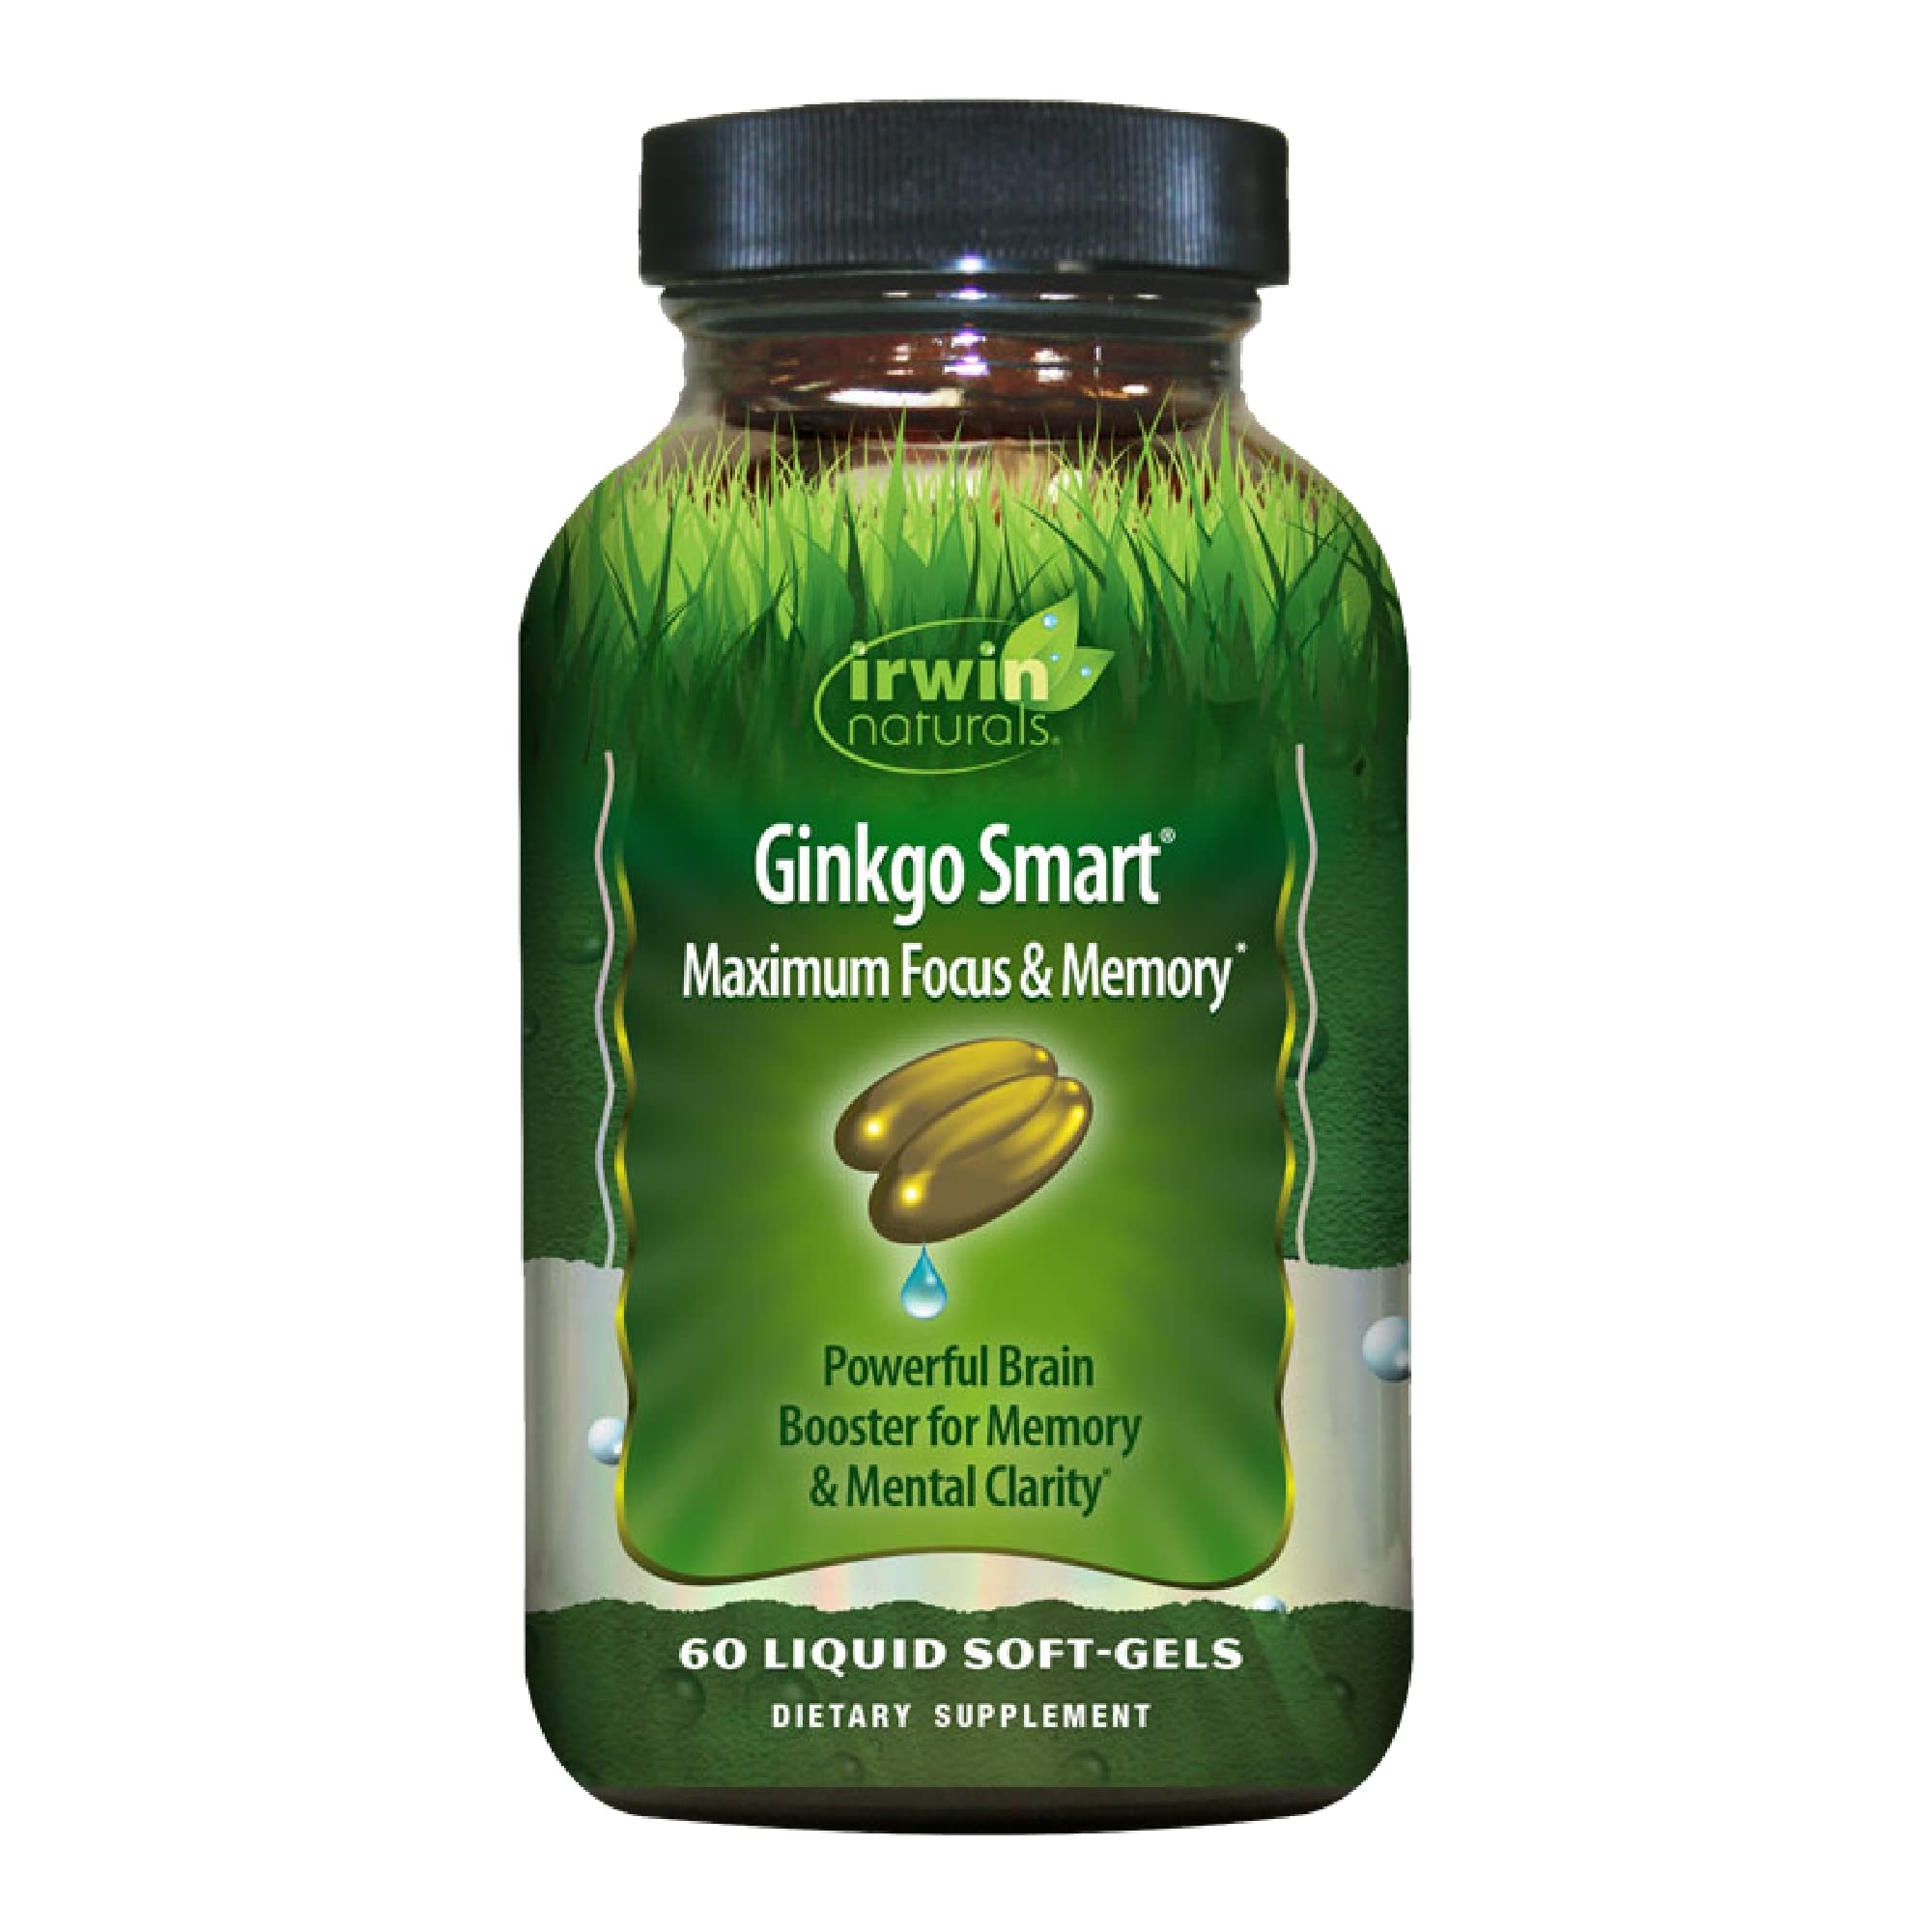 Irwin Naturals Ginkgo Smart Maximum Focus & Memory Dietary Supplement Liquid Gel Caps, 60-Count Bottles